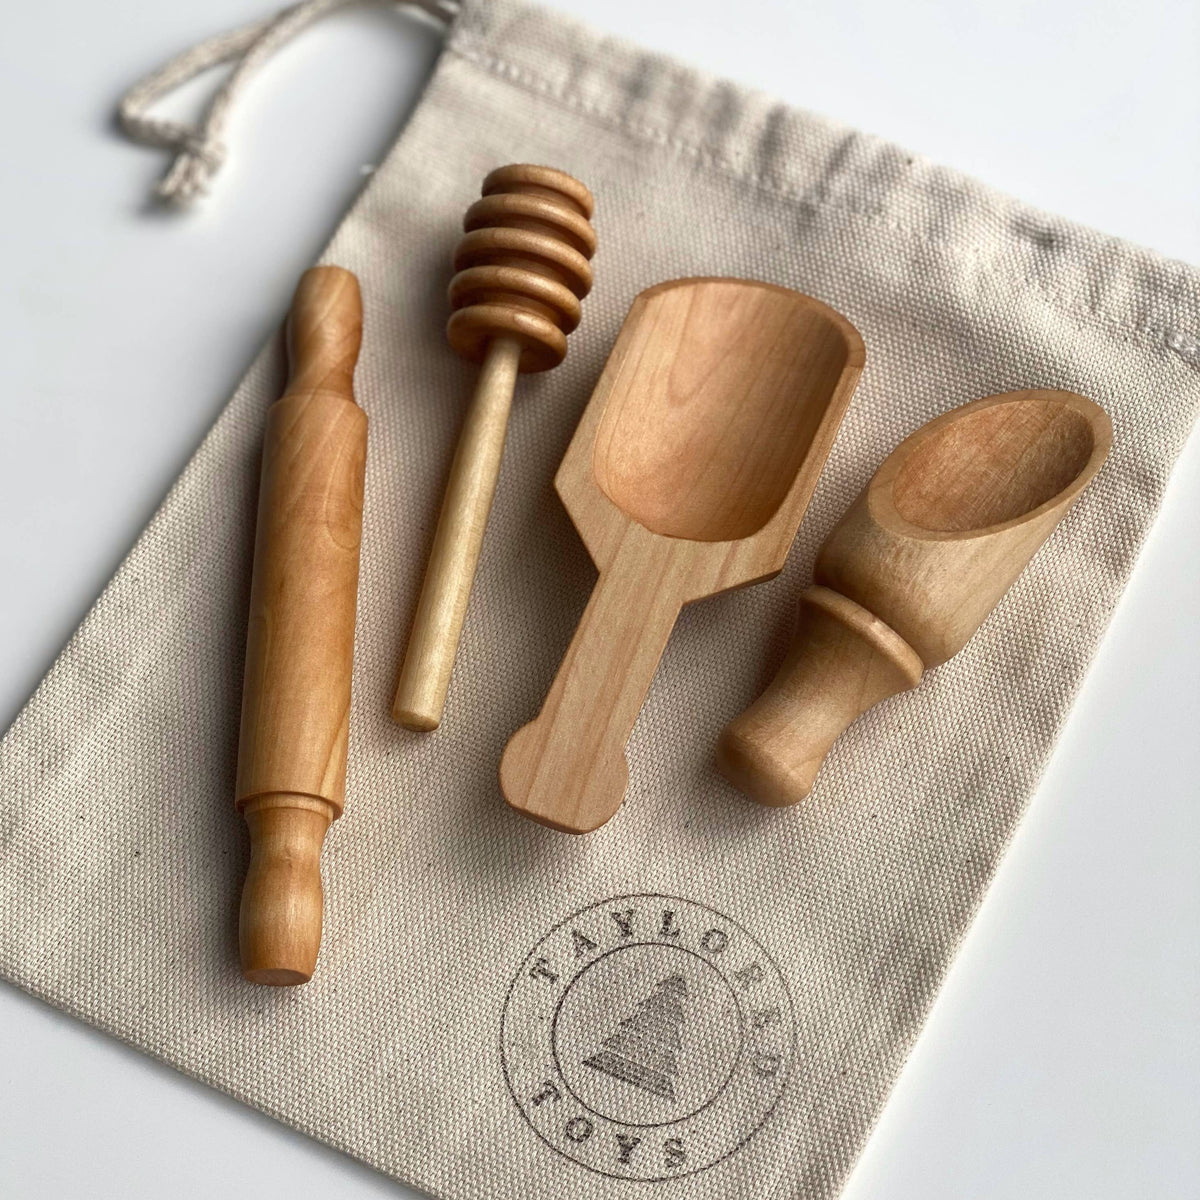 Mini Wooden Kitchen Play Kit